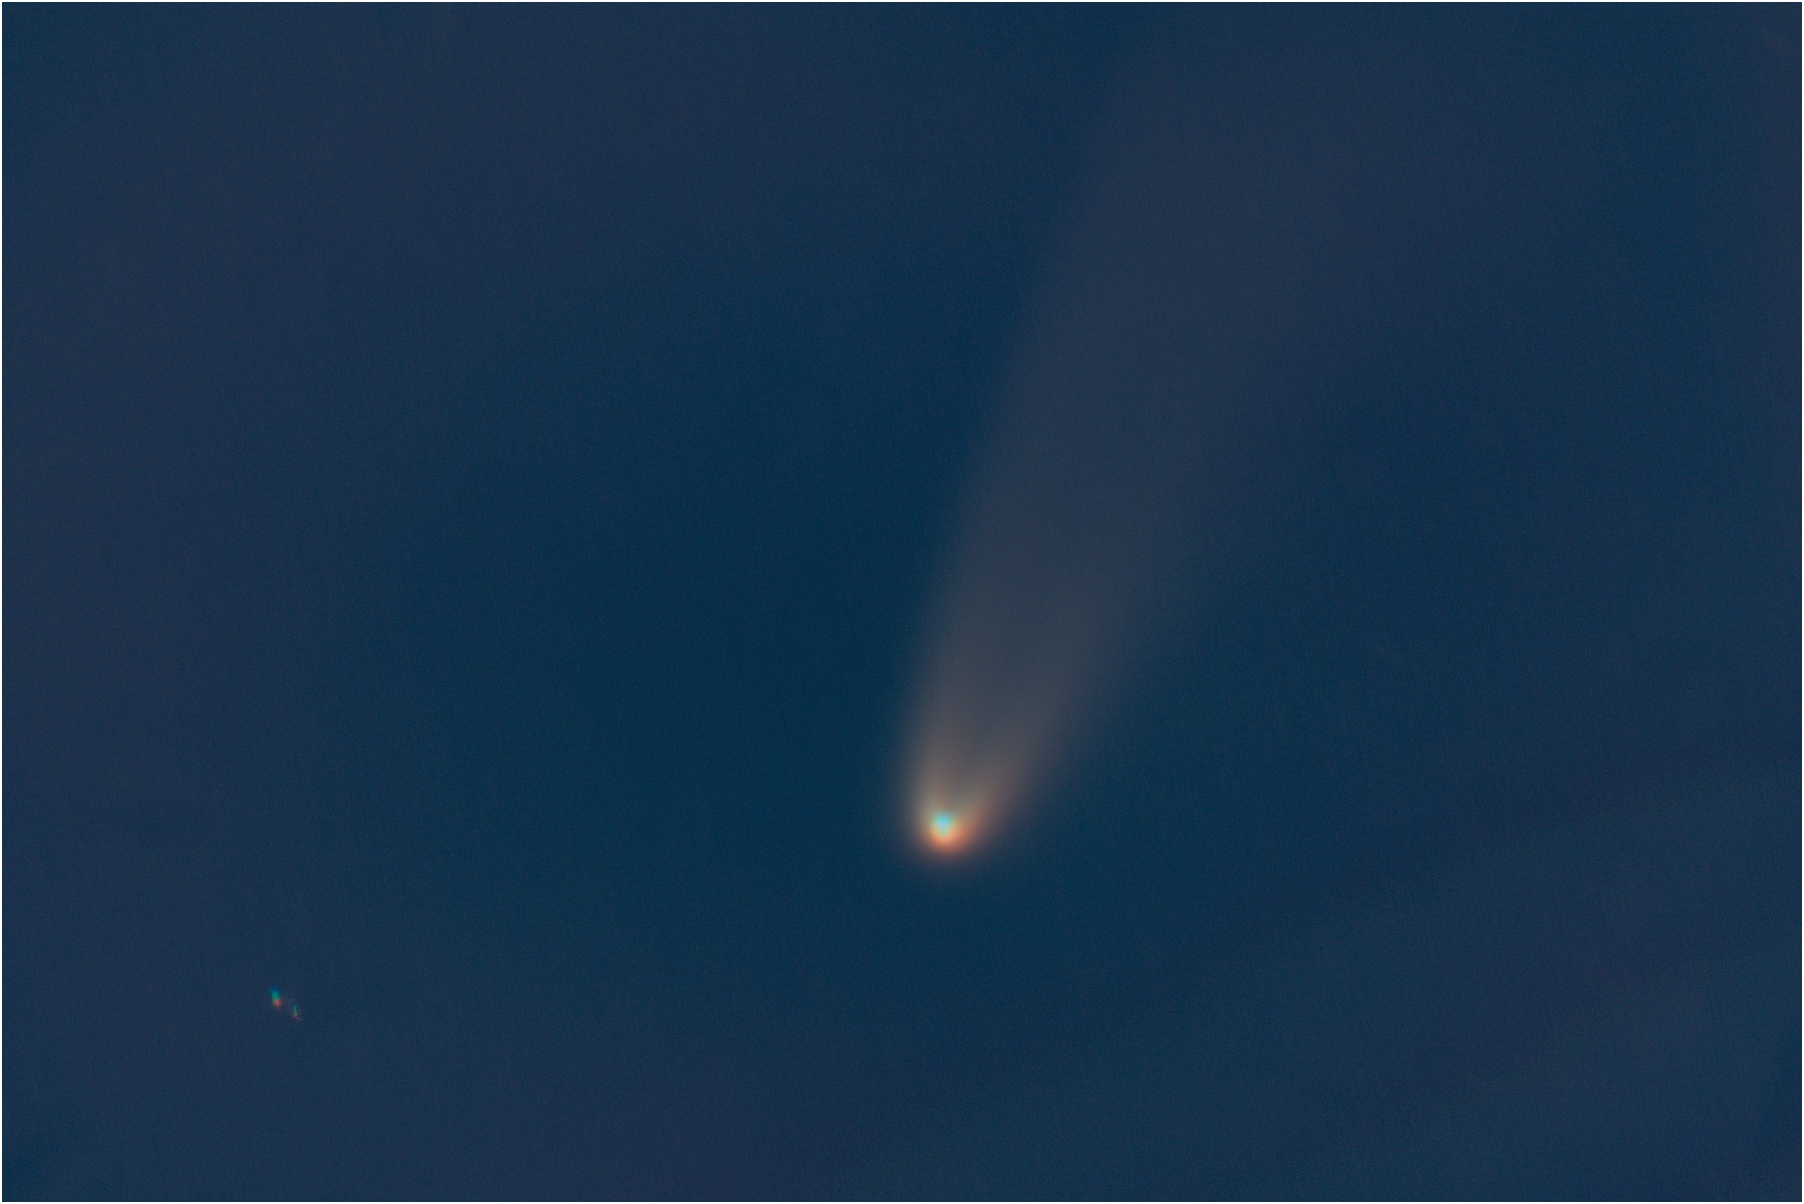 C/2020 F3 (NEOWISE) 2020-07-04 01:43 UT